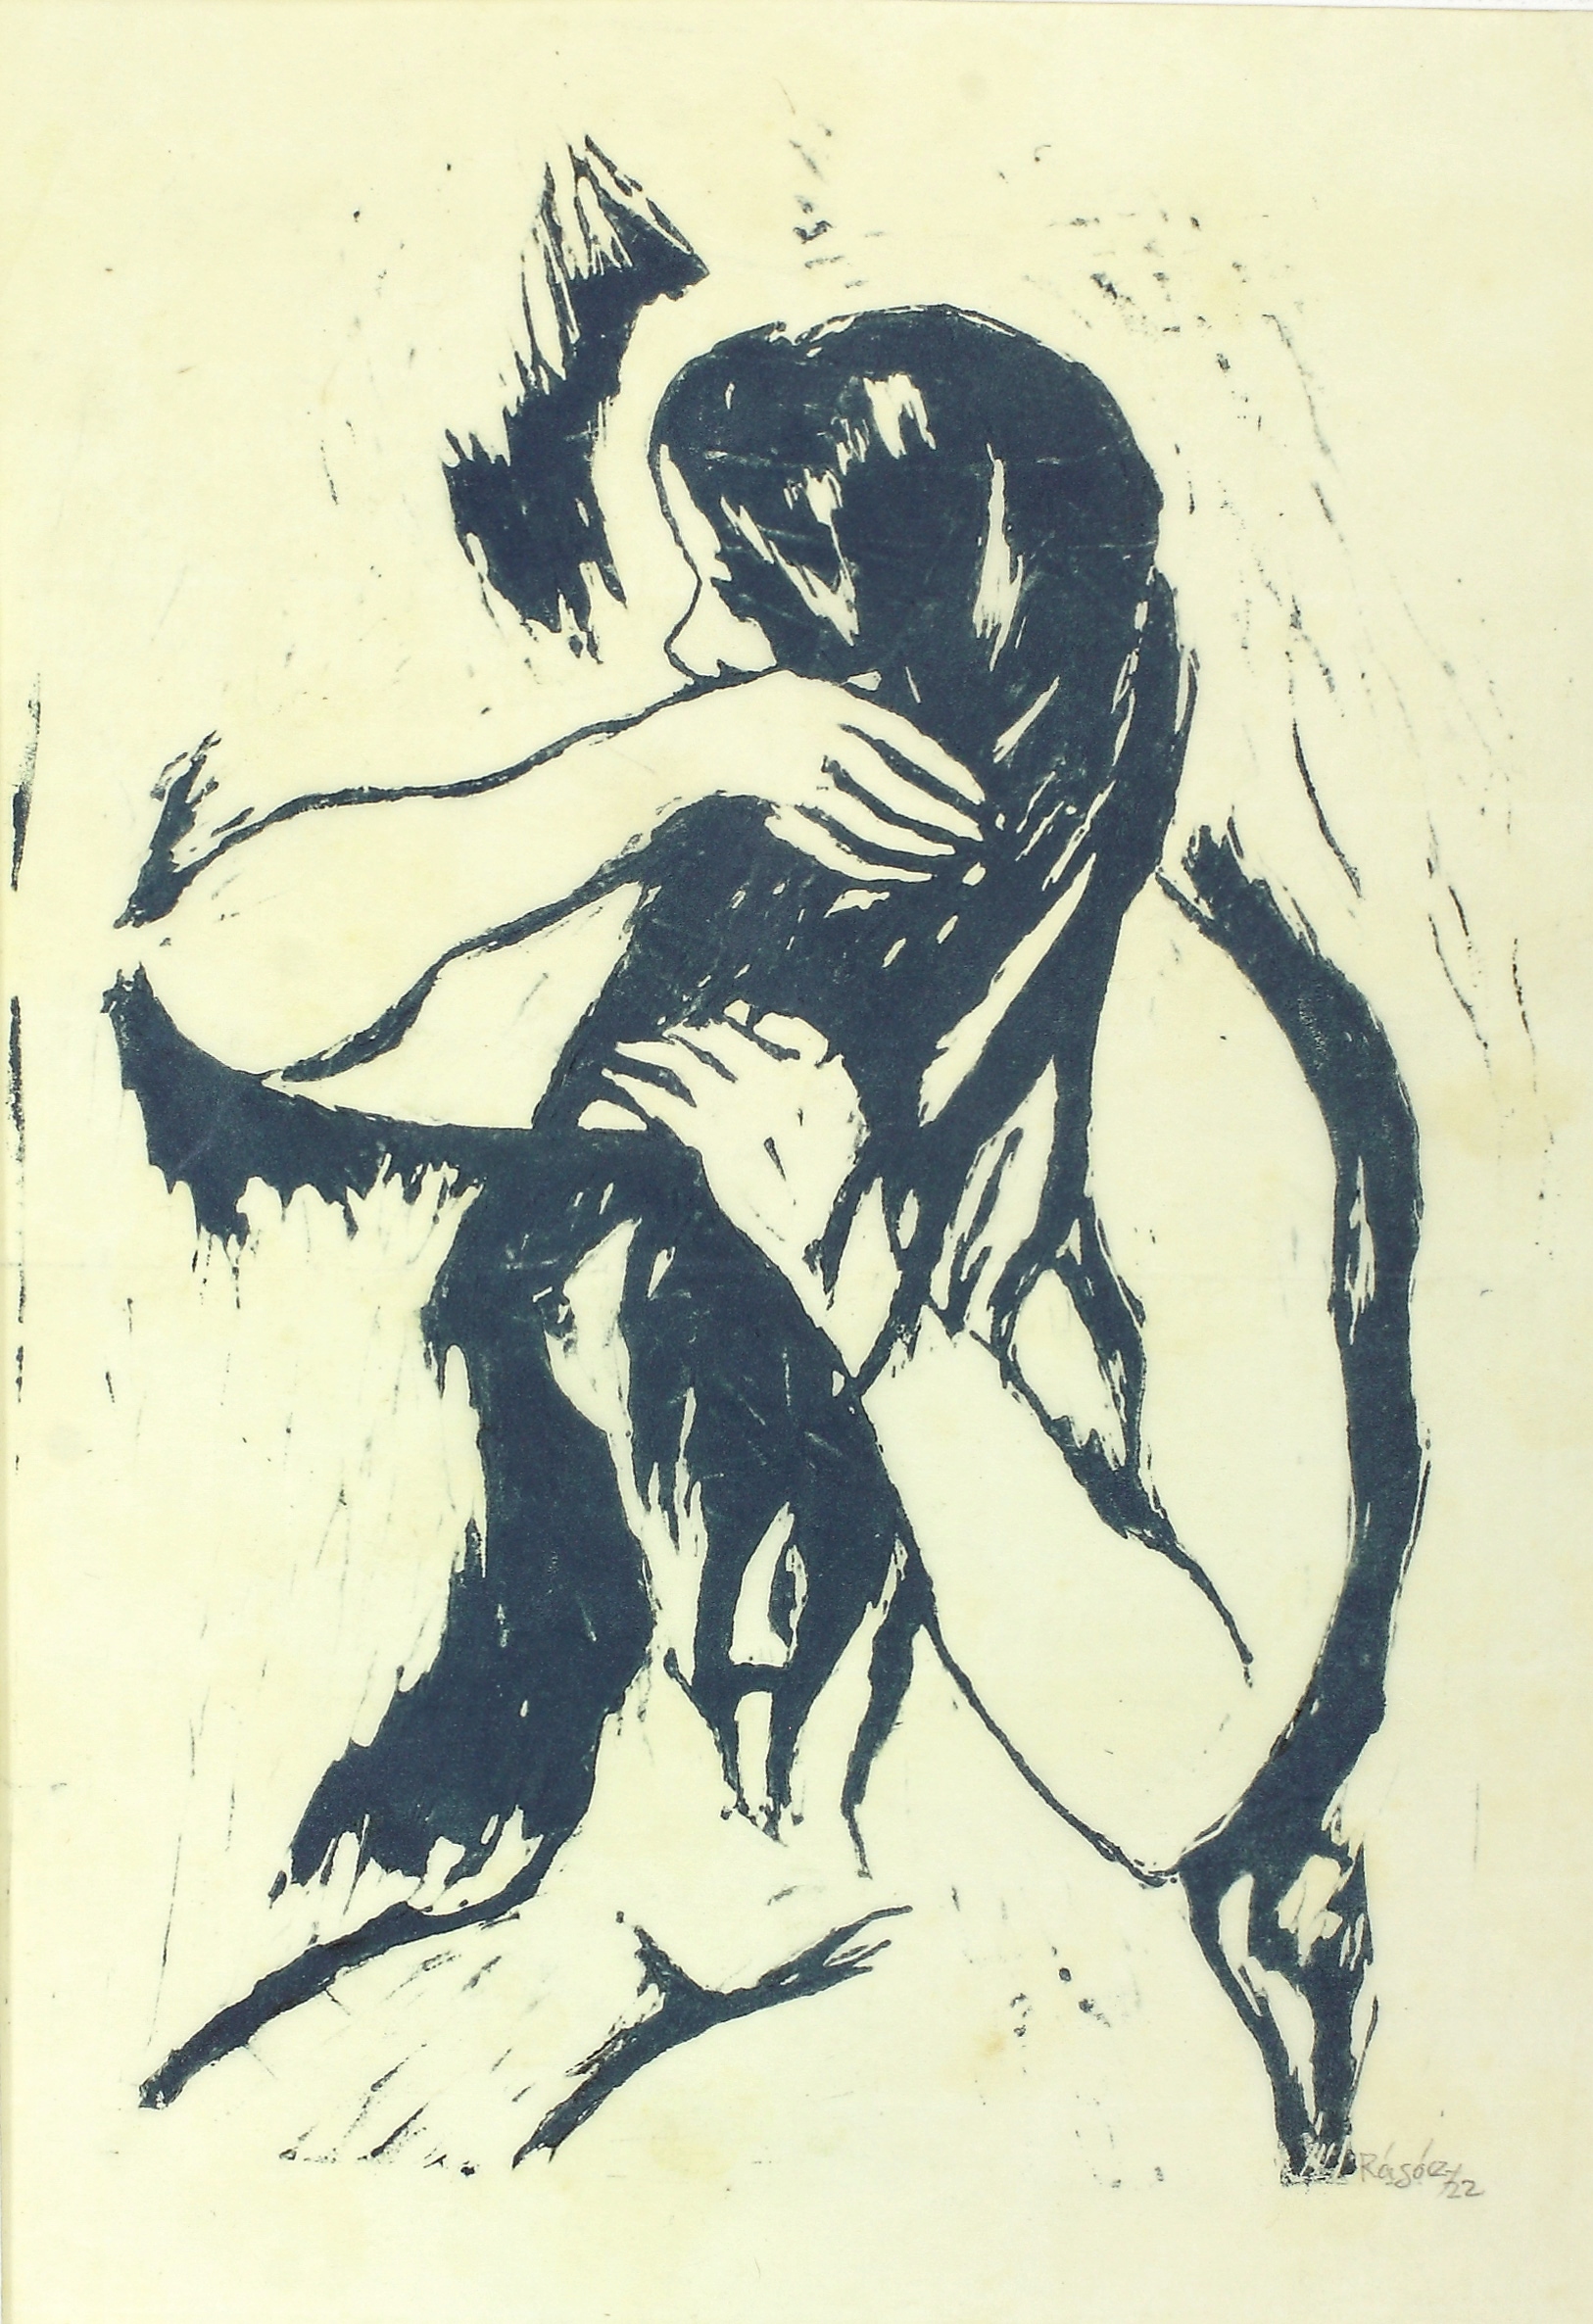 Auktionshaus Quentin Berlin  Künstlergrafik RÃ¡gÃ³czy  Joachim (1895 Bonn - 1975 Berlin)  / MÃ¤dchenakt  die Haare kÃ¤mmend. Holzschnitt in Blaugrau auf Japan. 30 x 22 cm. Signiert und d